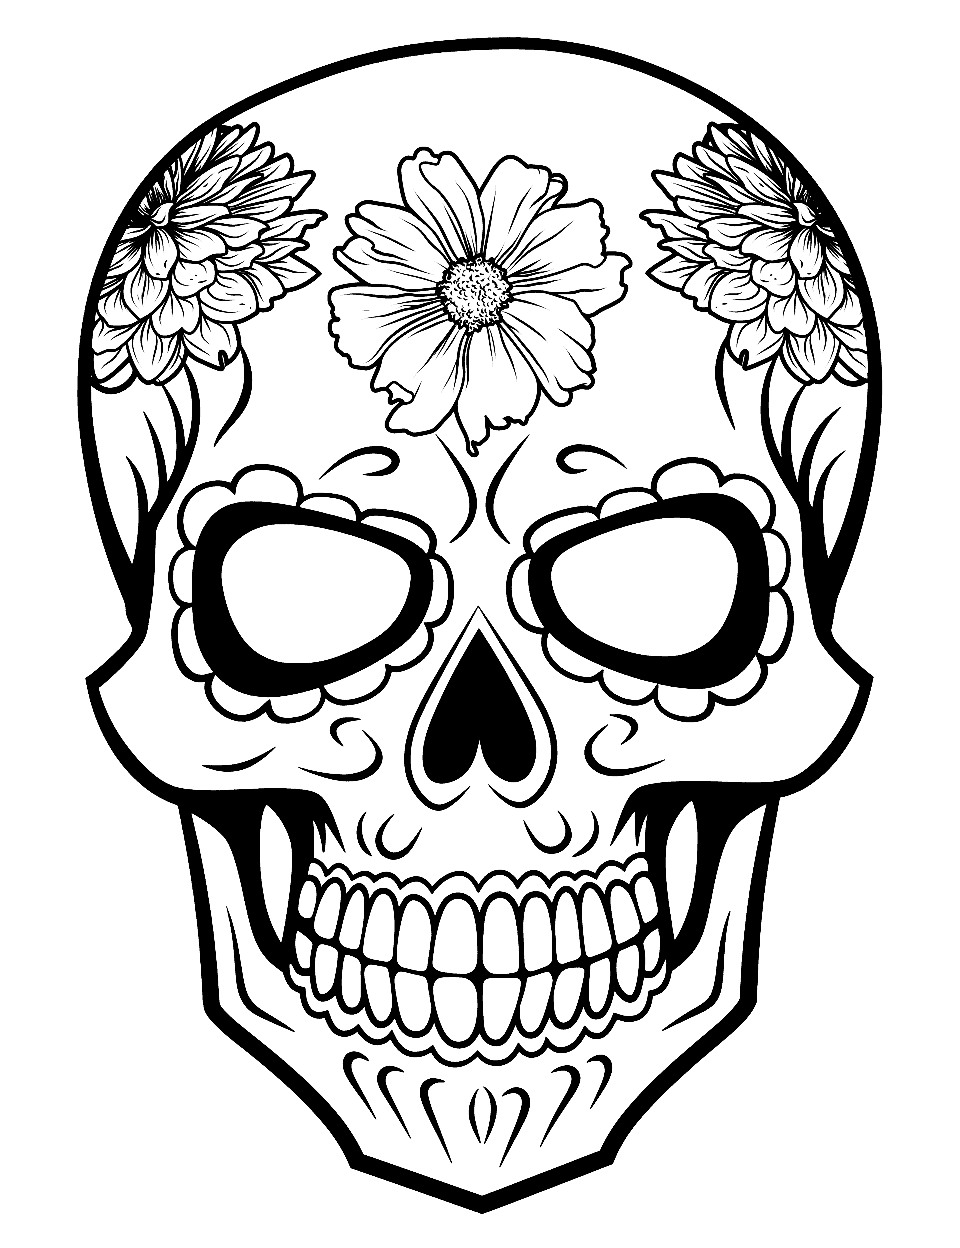 Colorful Sugar Skull Coloring Page - A brightly decorated sugar skull celebrating Dia de los Muertos.